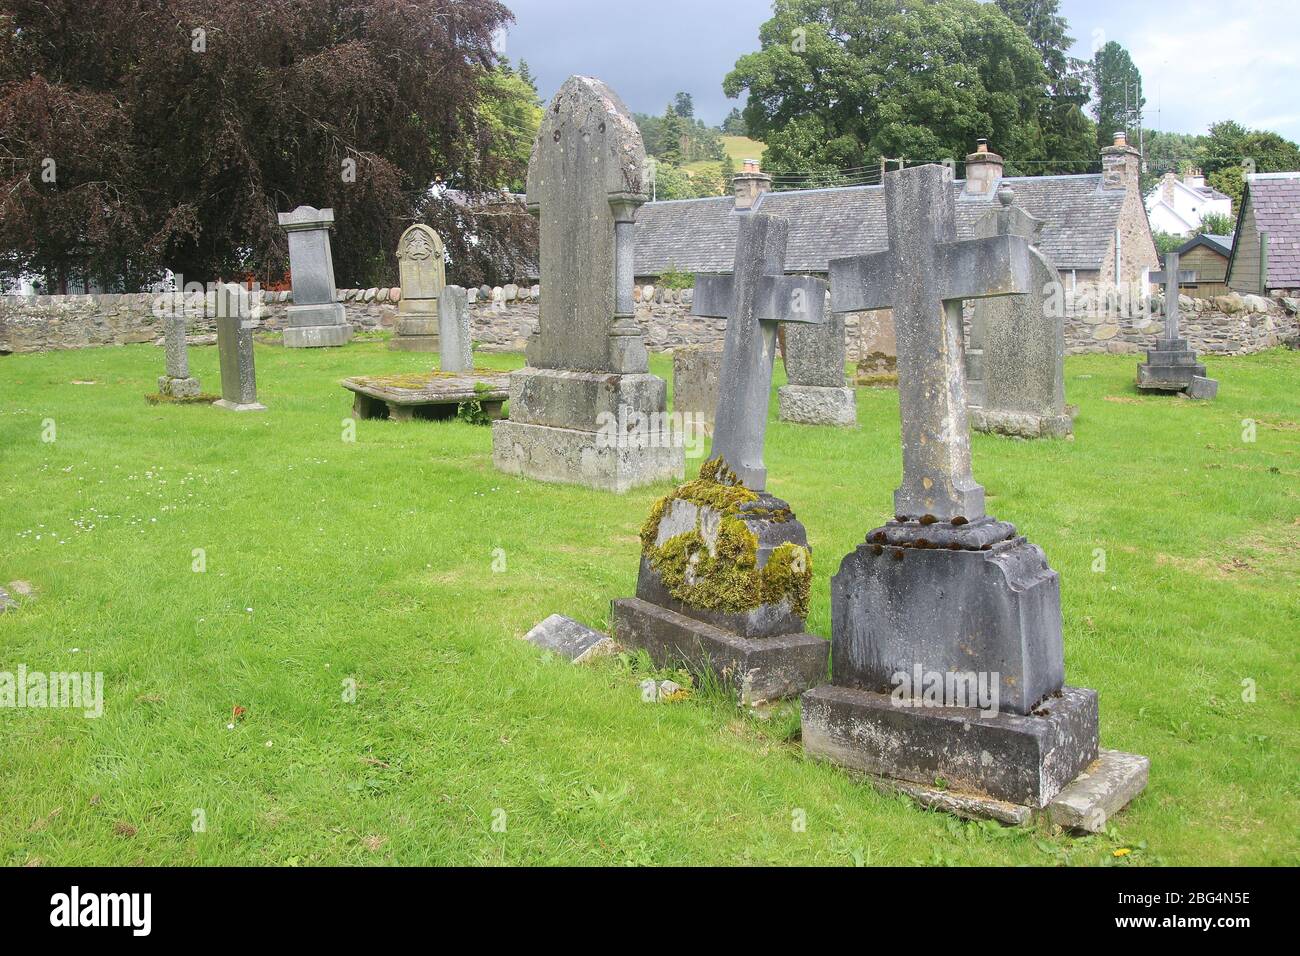 Alter Friedhof der ehemaligen Kirche von Moulin, erbaut 1873, in der Nähe von Pitlochry, Schottland. Die Kirche ist heute ein Kulturzentrum. Großbritannien, Europa. Stockfoto